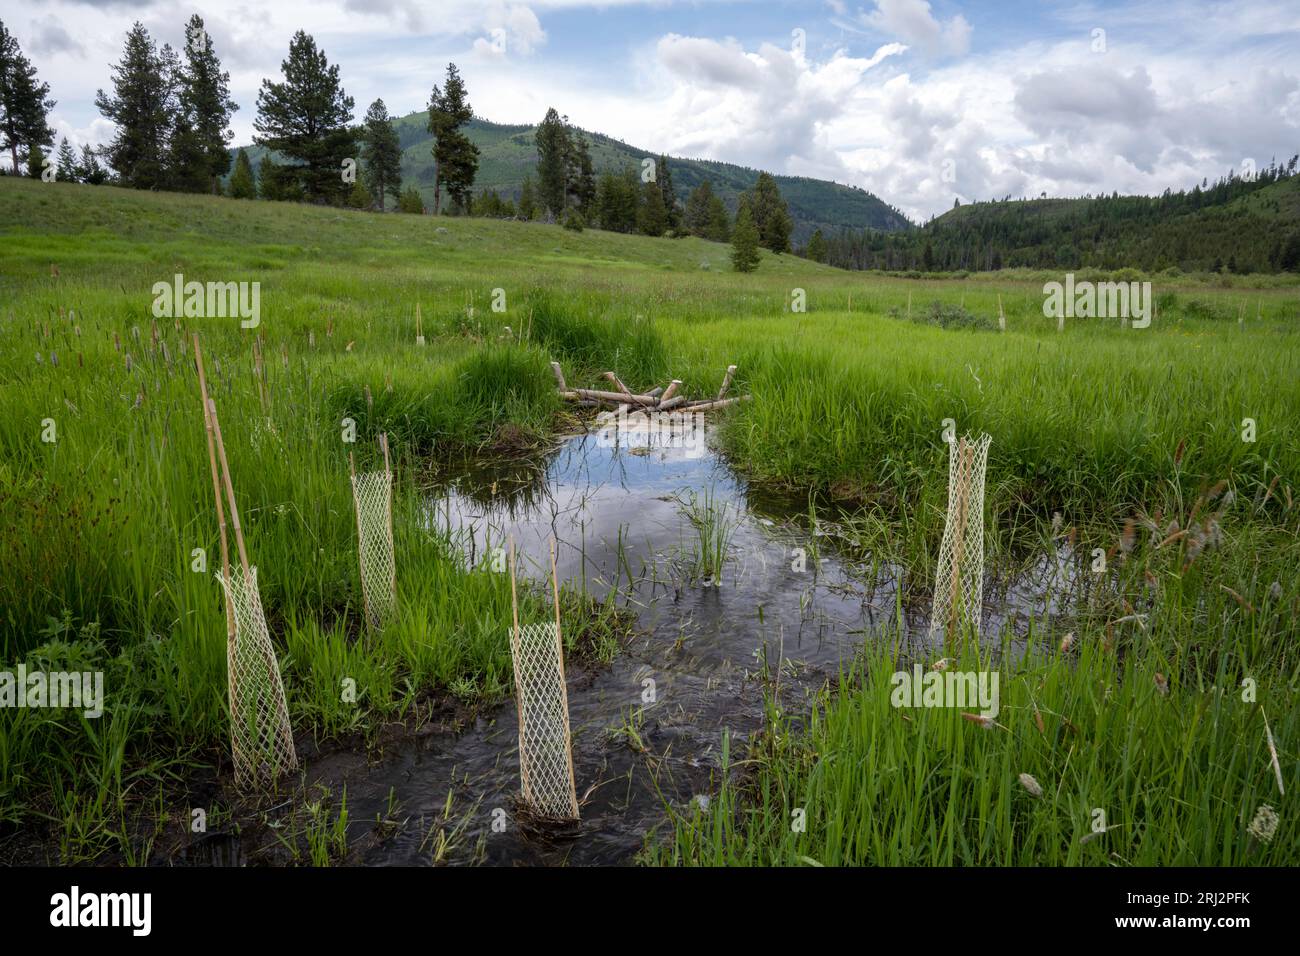 6/11/22.Wild Horse Creek, Montana. Analogues de castor dam (BDA) et semis de saule utilisés pour ralentir le débit d'eau du ruisseau redressé pour l'irrigation 100 ans Banque D'Images